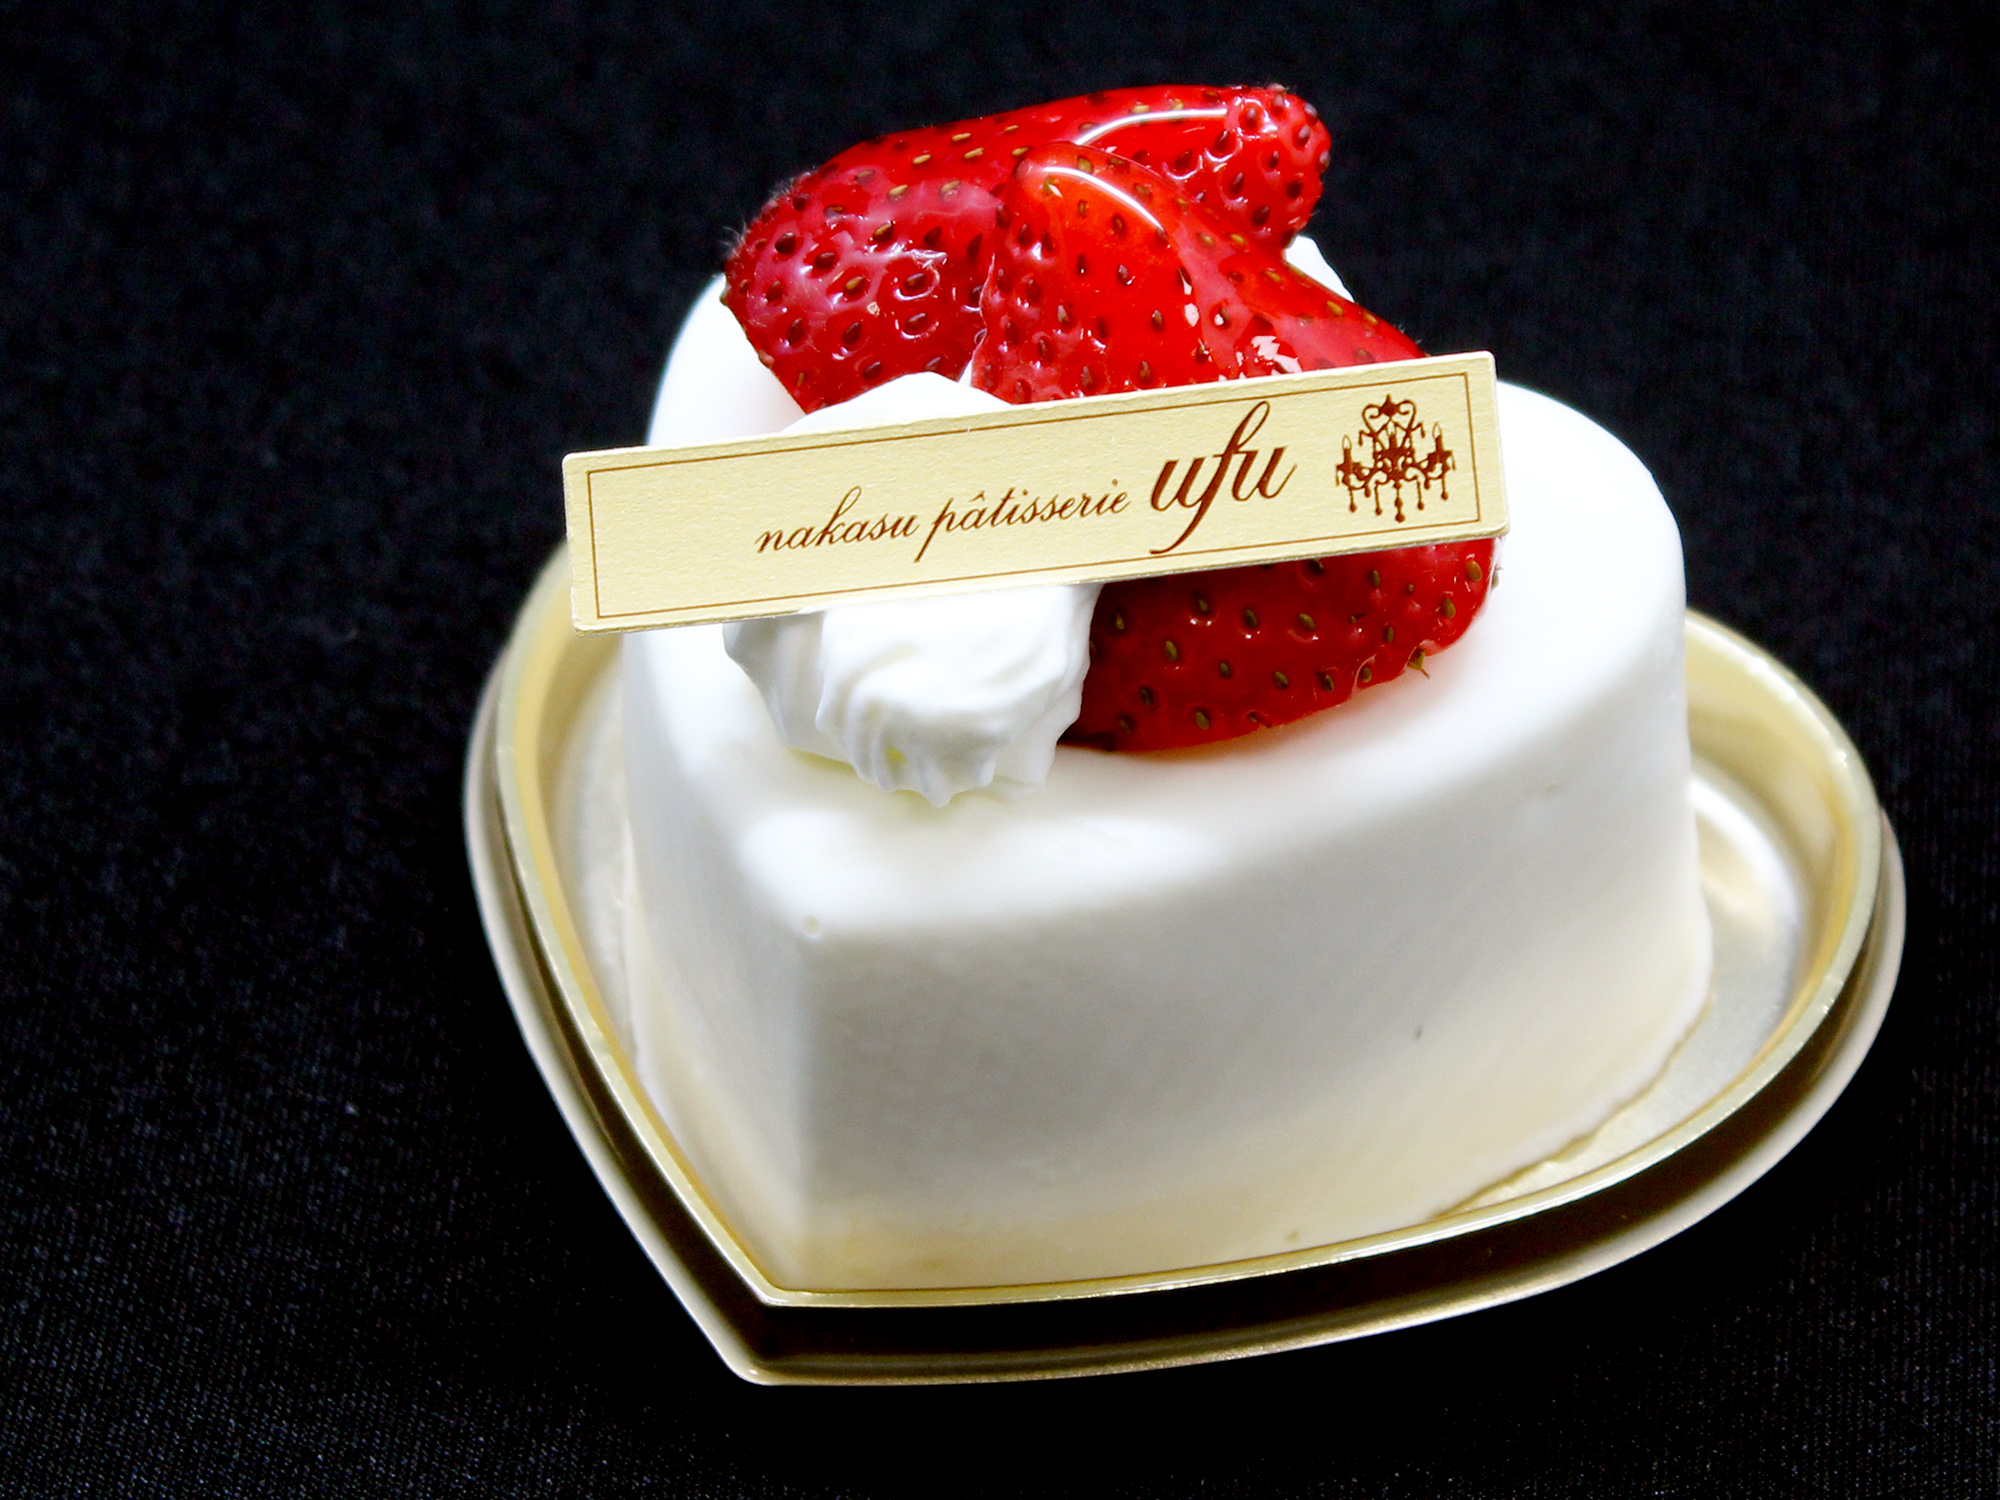 ホテルパティスリー Ufu ウフ 中洲で夜中まで営業しているケーキショップ 2 000円よりスタッフがケーキお届け致します 中洲1丁目 5丁目